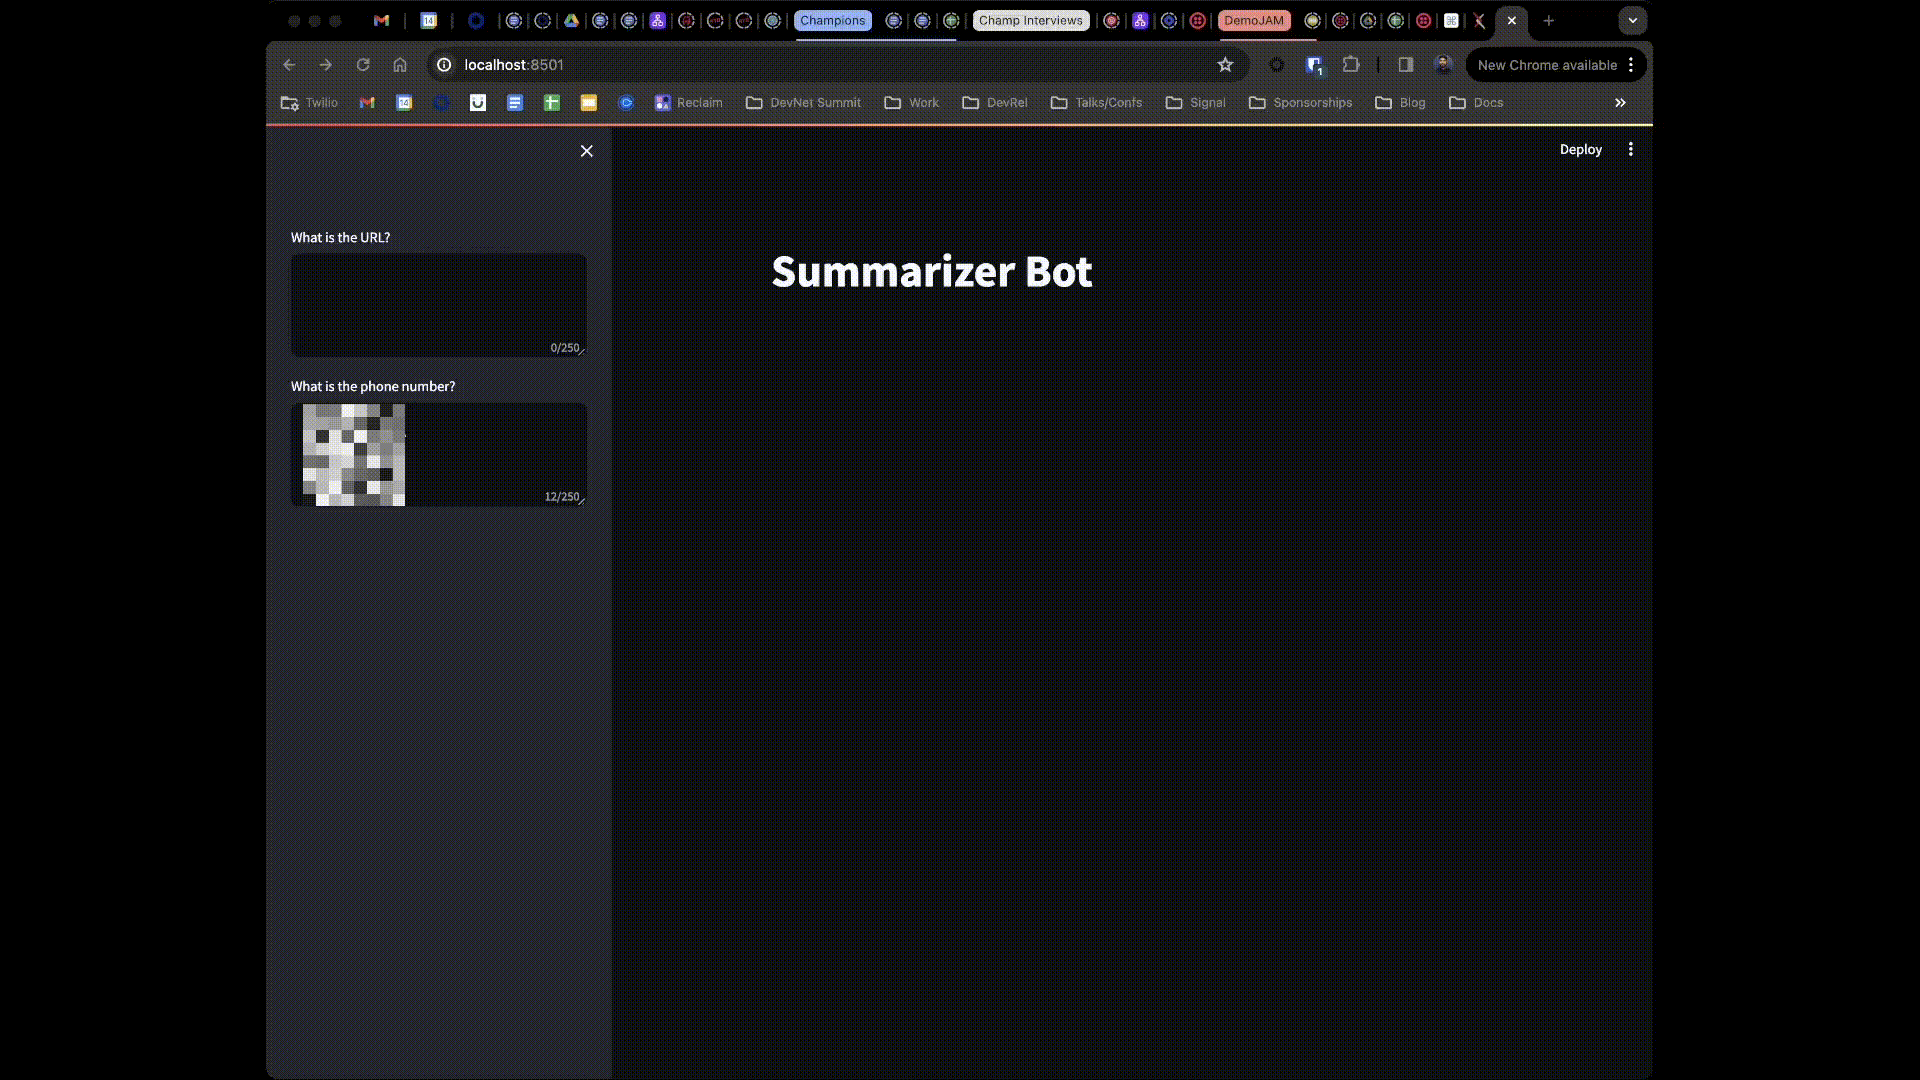 Summarizer Bot Demo